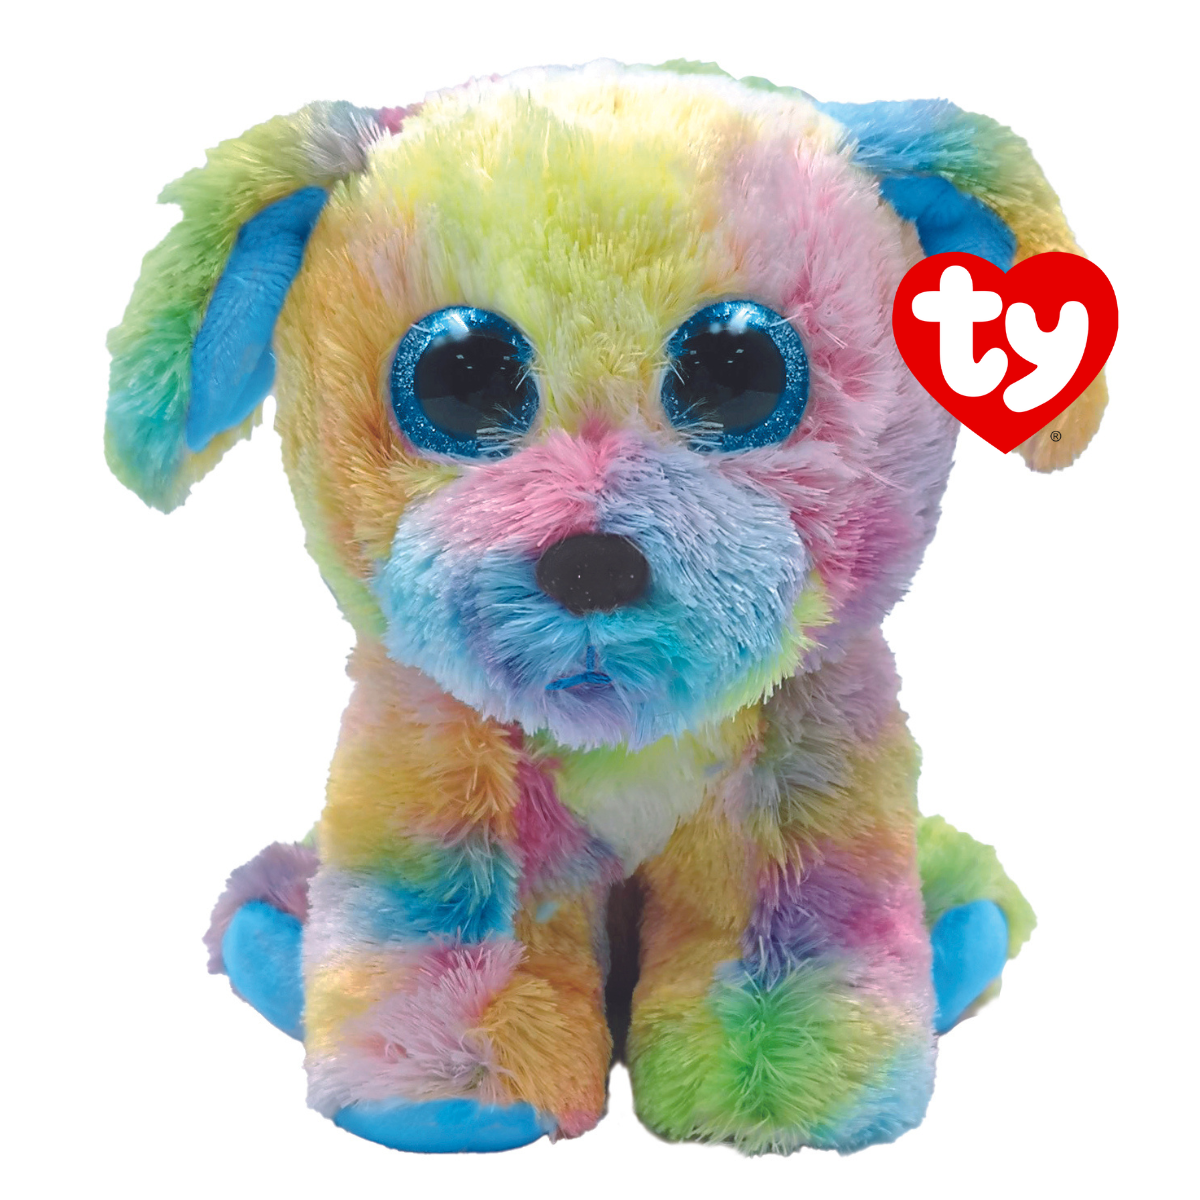 Ty peluche - beanie boos - cane max the dog arcobaleno - cagnolino con occhioni glitter azzurri - il morbido pupazzo con gli occhi grandi scintillanti, 15 centimetri, 40448 - TY